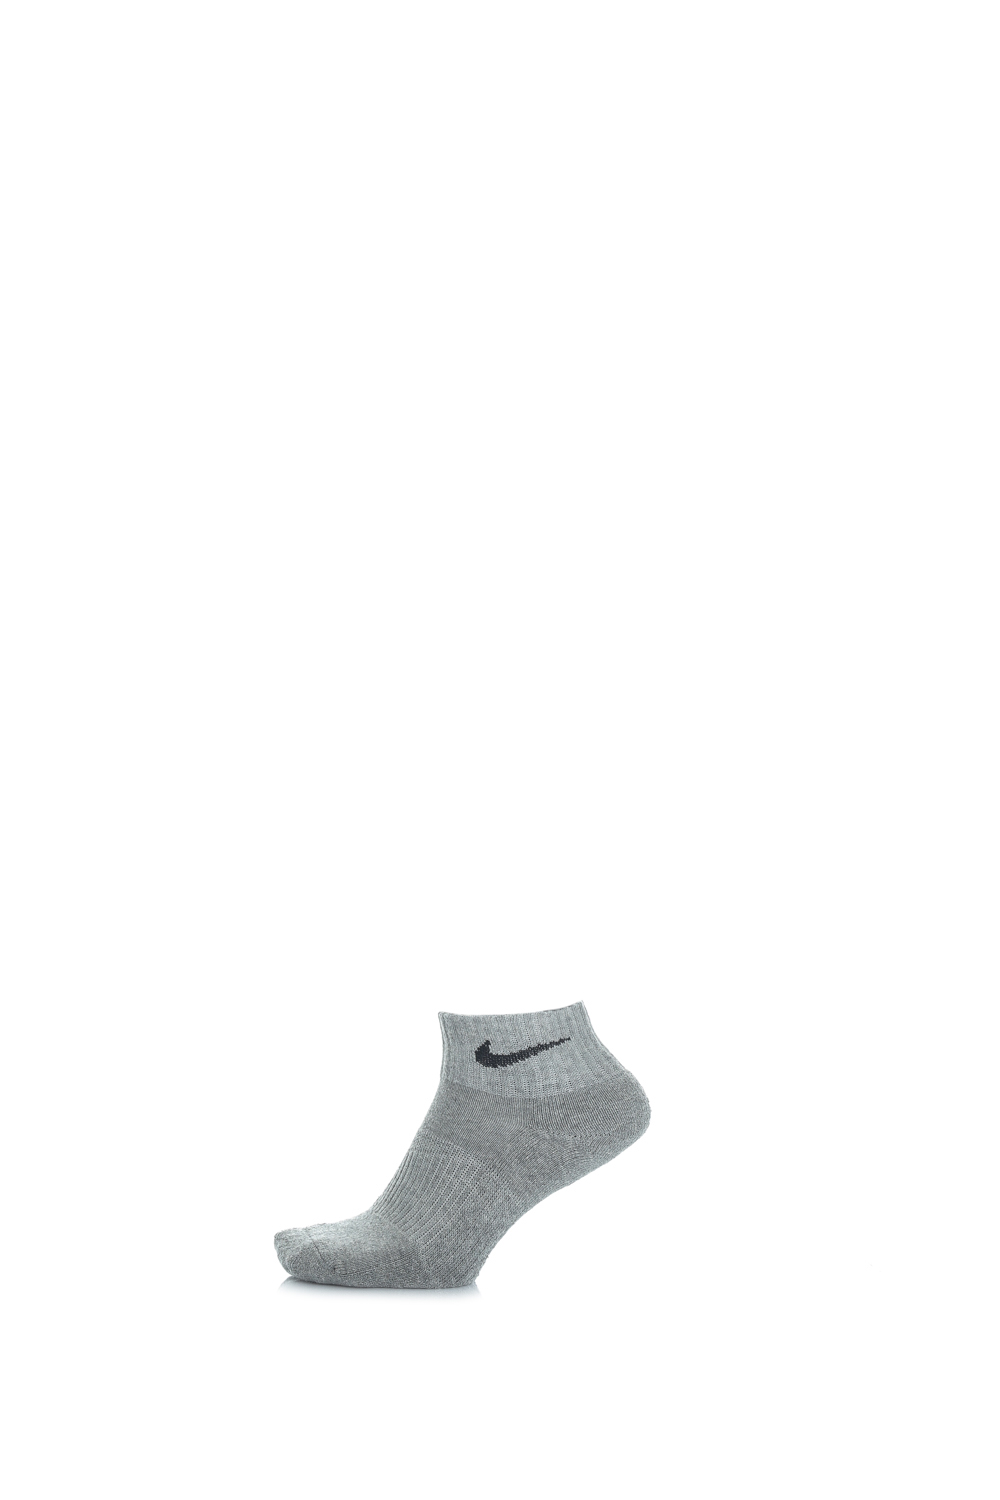 Γυναικεία/Αξεσουάρ/Κάλτσες NIKE - Σετ από 3 ζευγάρια κάλτσες μαύρες-γκρι-λευκές